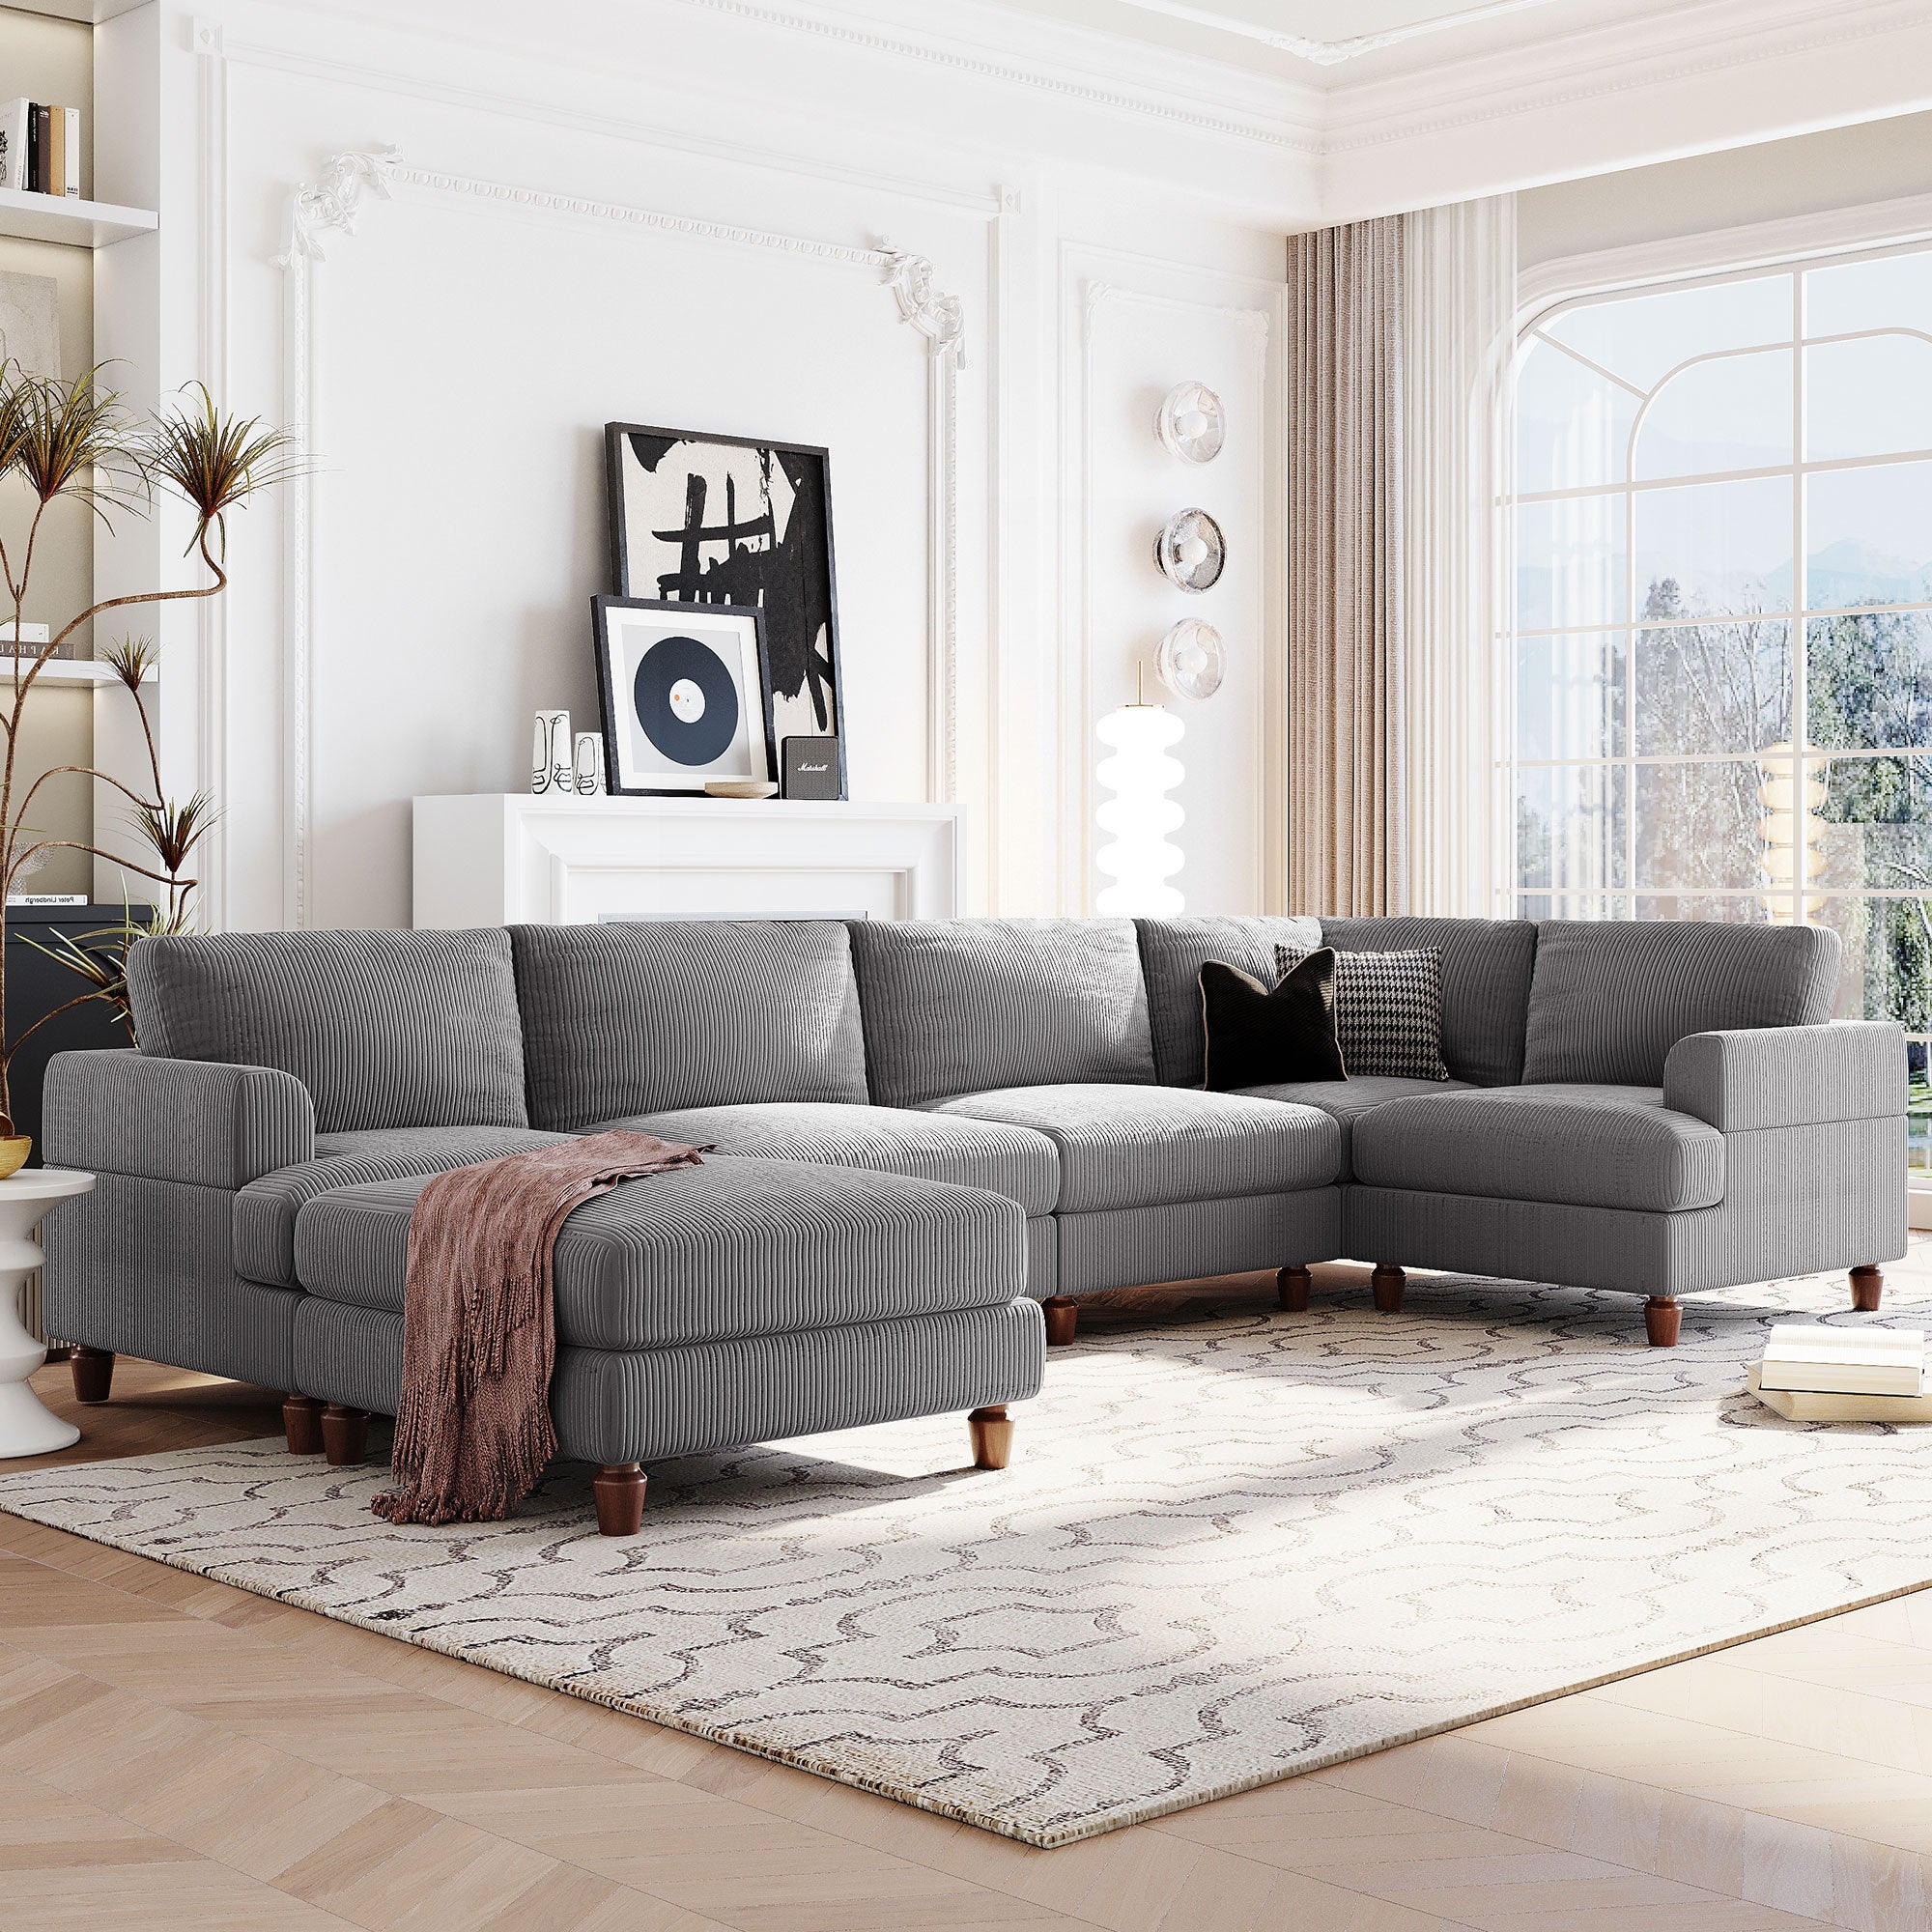 Modular Sectional Sofa: L-Shaped Ottoman, Spacious - Gray